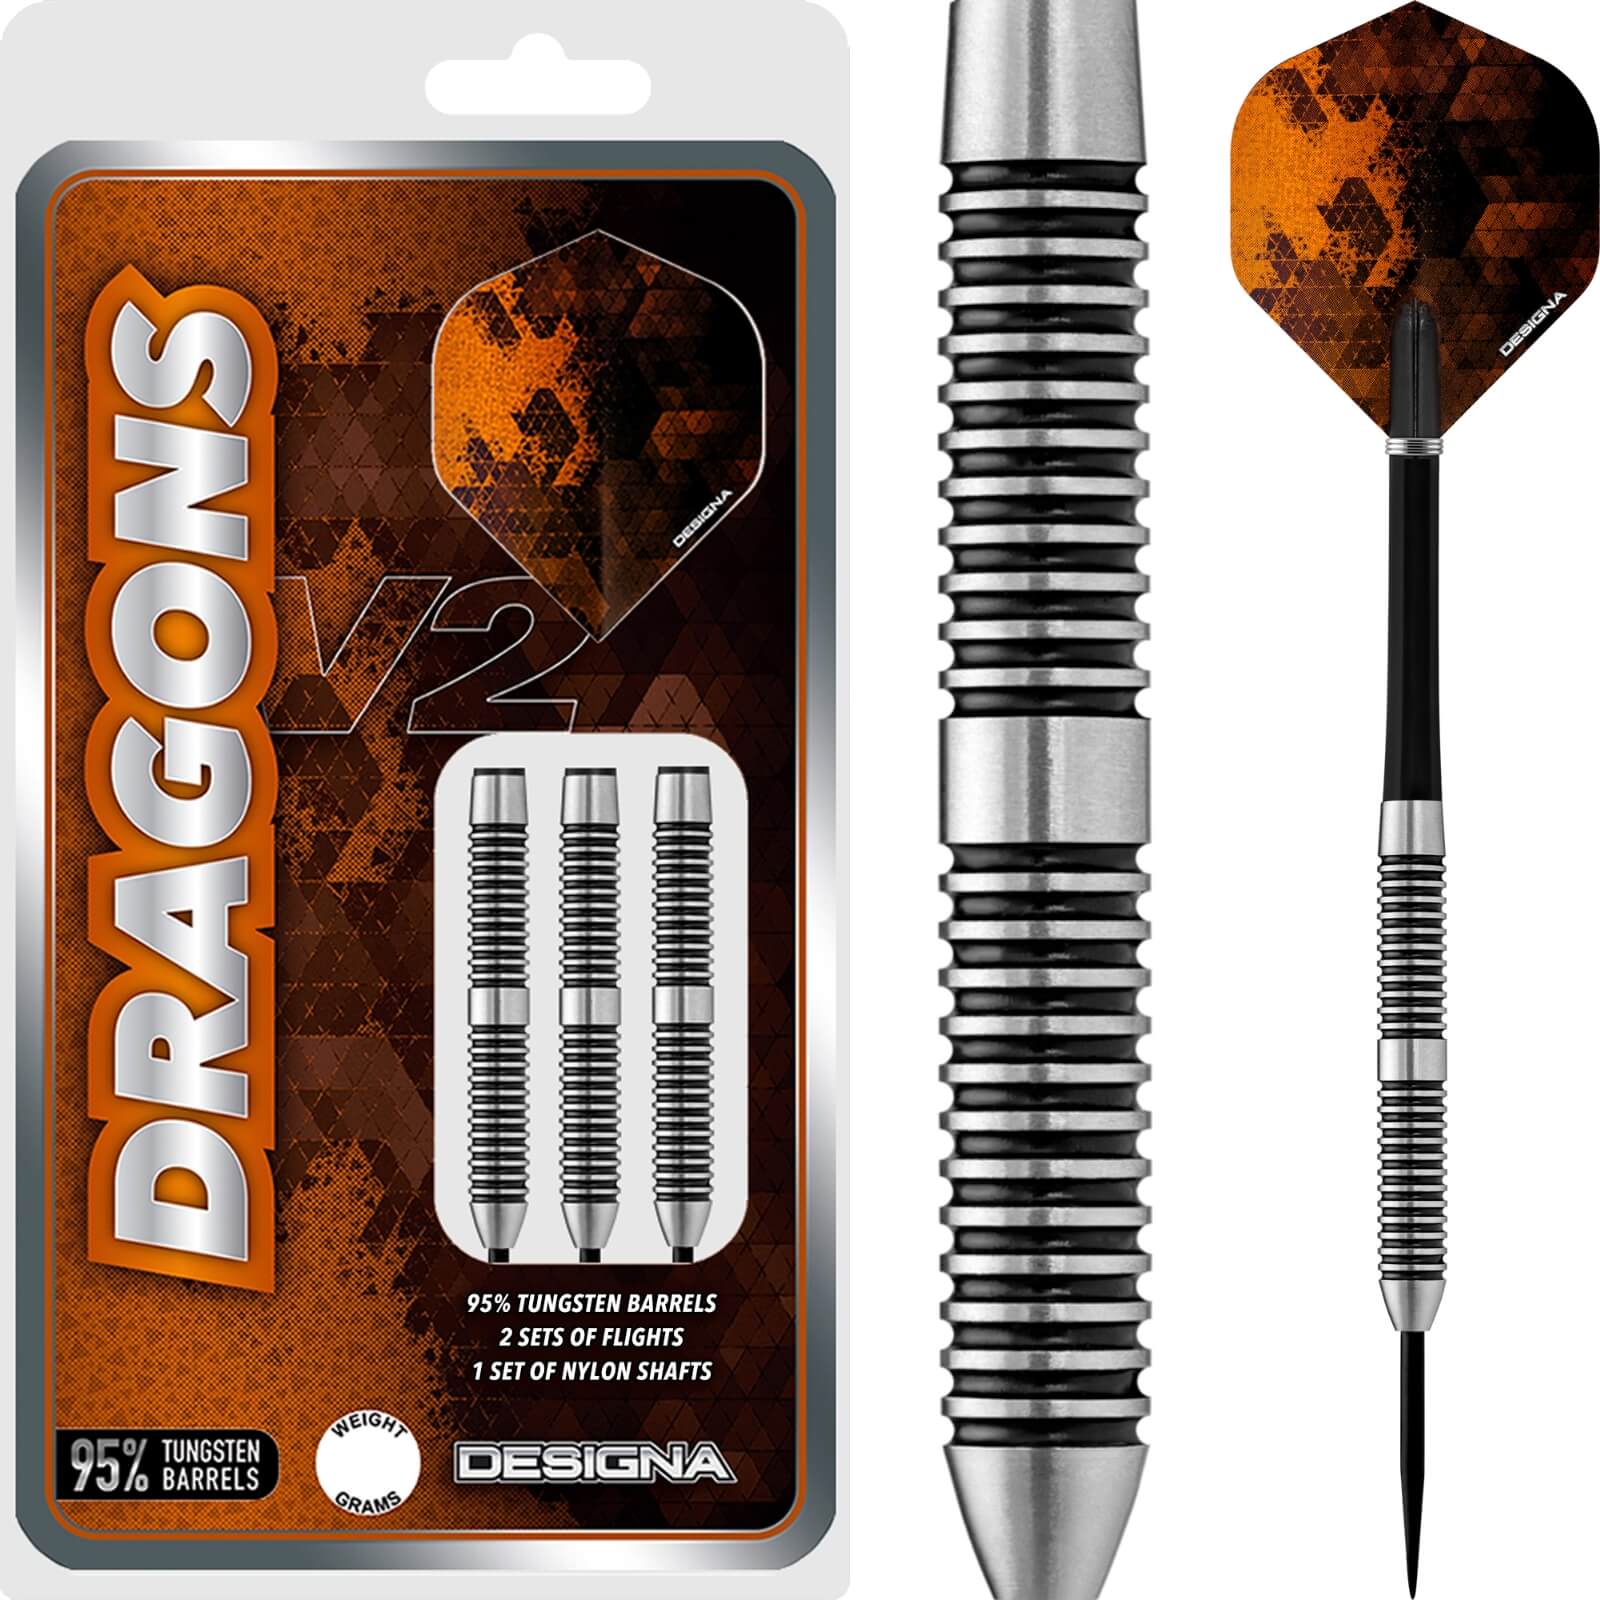 Darts - Designa - Dragons 95 V2 M2 Darts - Steel Tip - 95% Tungsten - 22g 24g 26g 